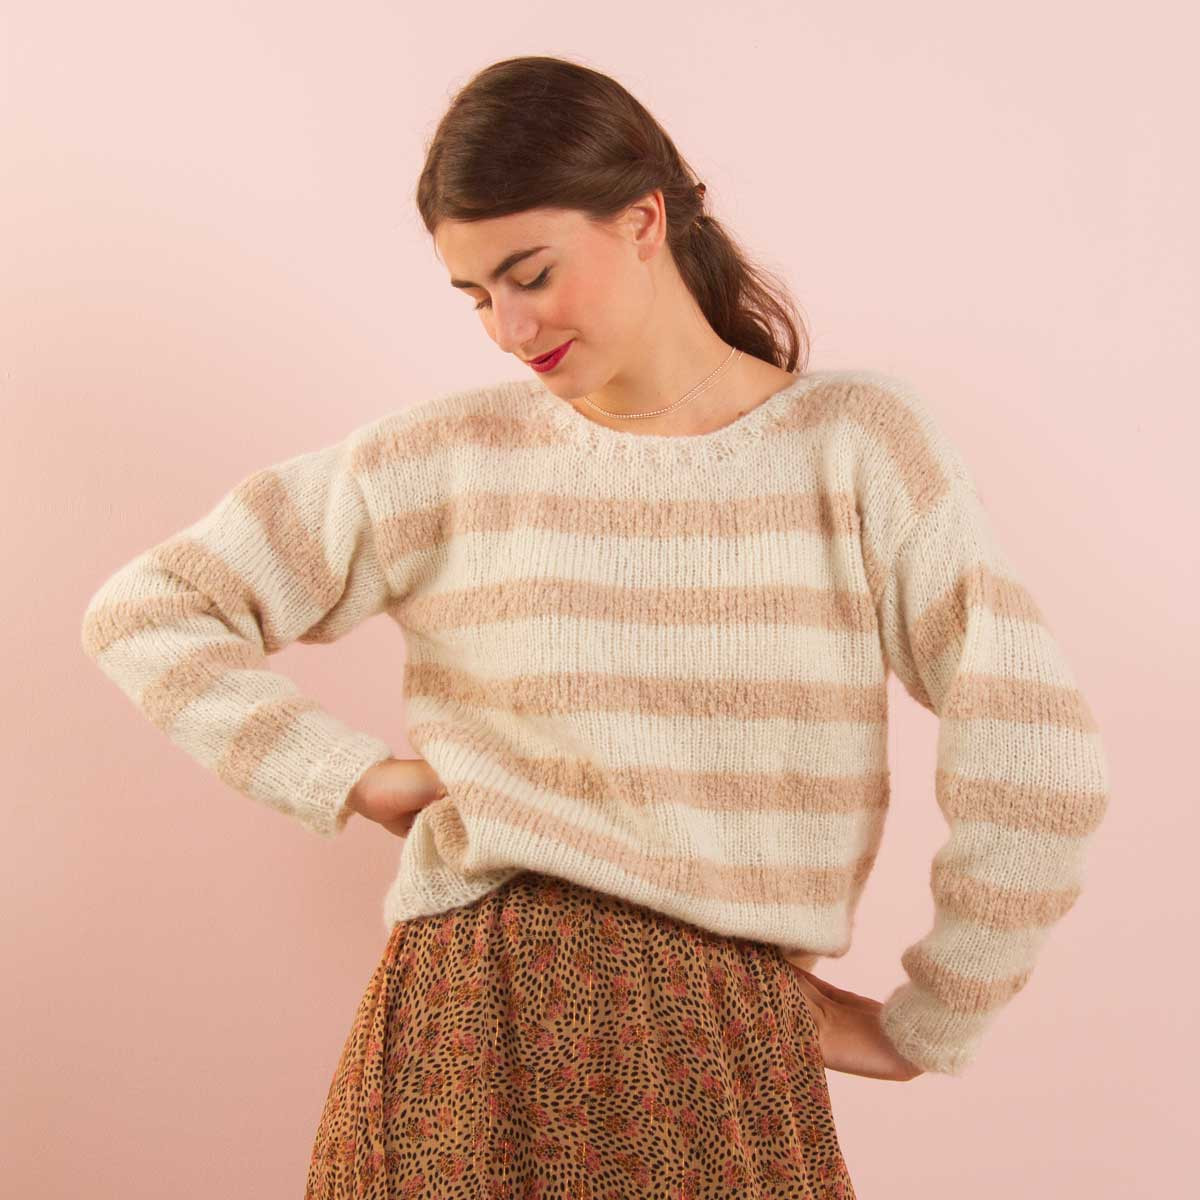 Women's jumper knitting pattern